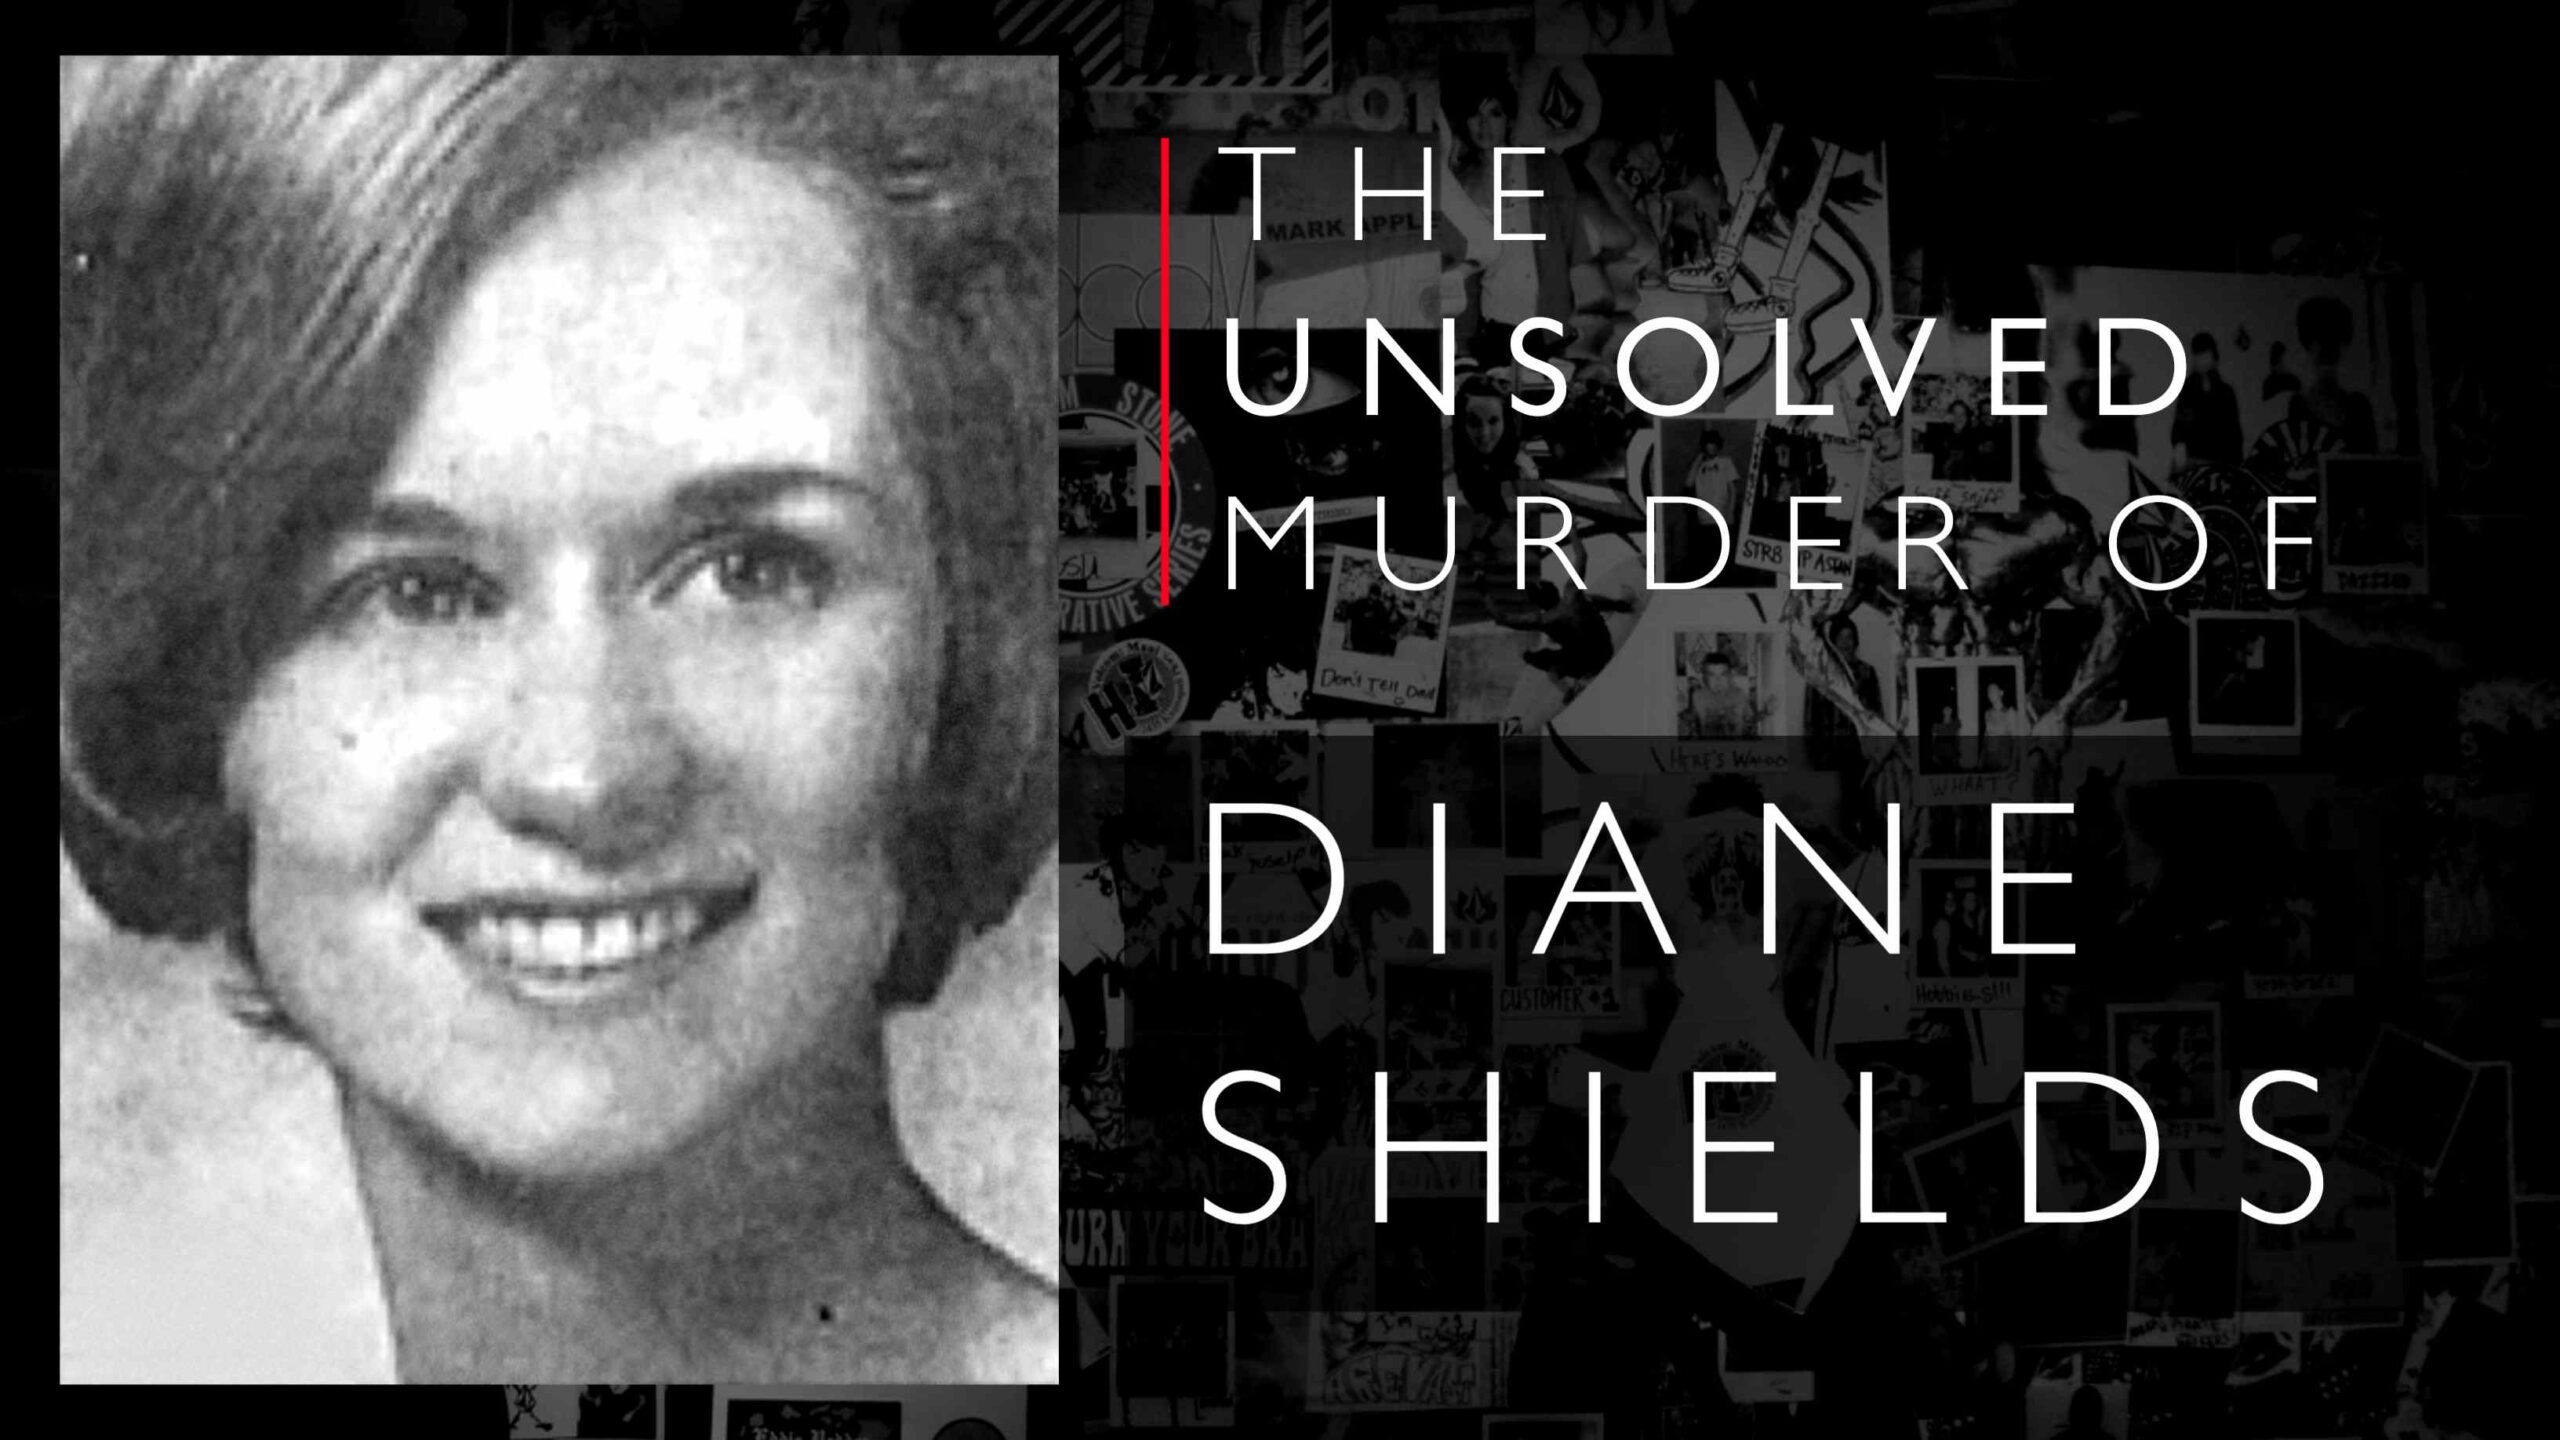 Diane Shields theo một cách nào đó đã theo chân Mary Shotwell Little, sau đó bị phát hiện bị sát hại.